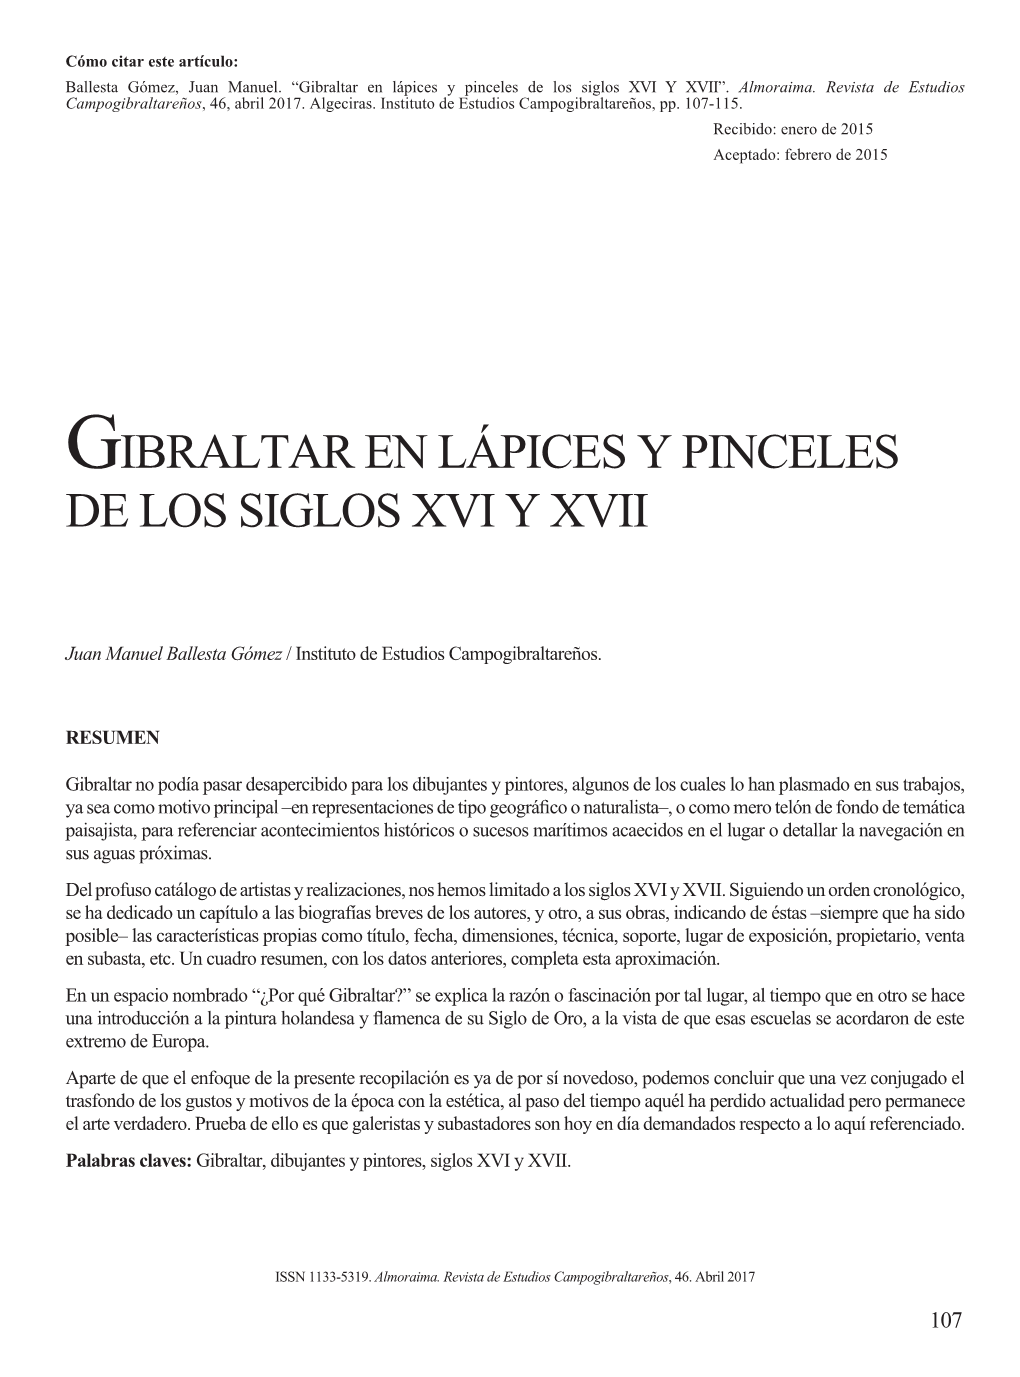 Gibraltar En Lápices Y Pinceles De Los Siglos XVI Y XVII”